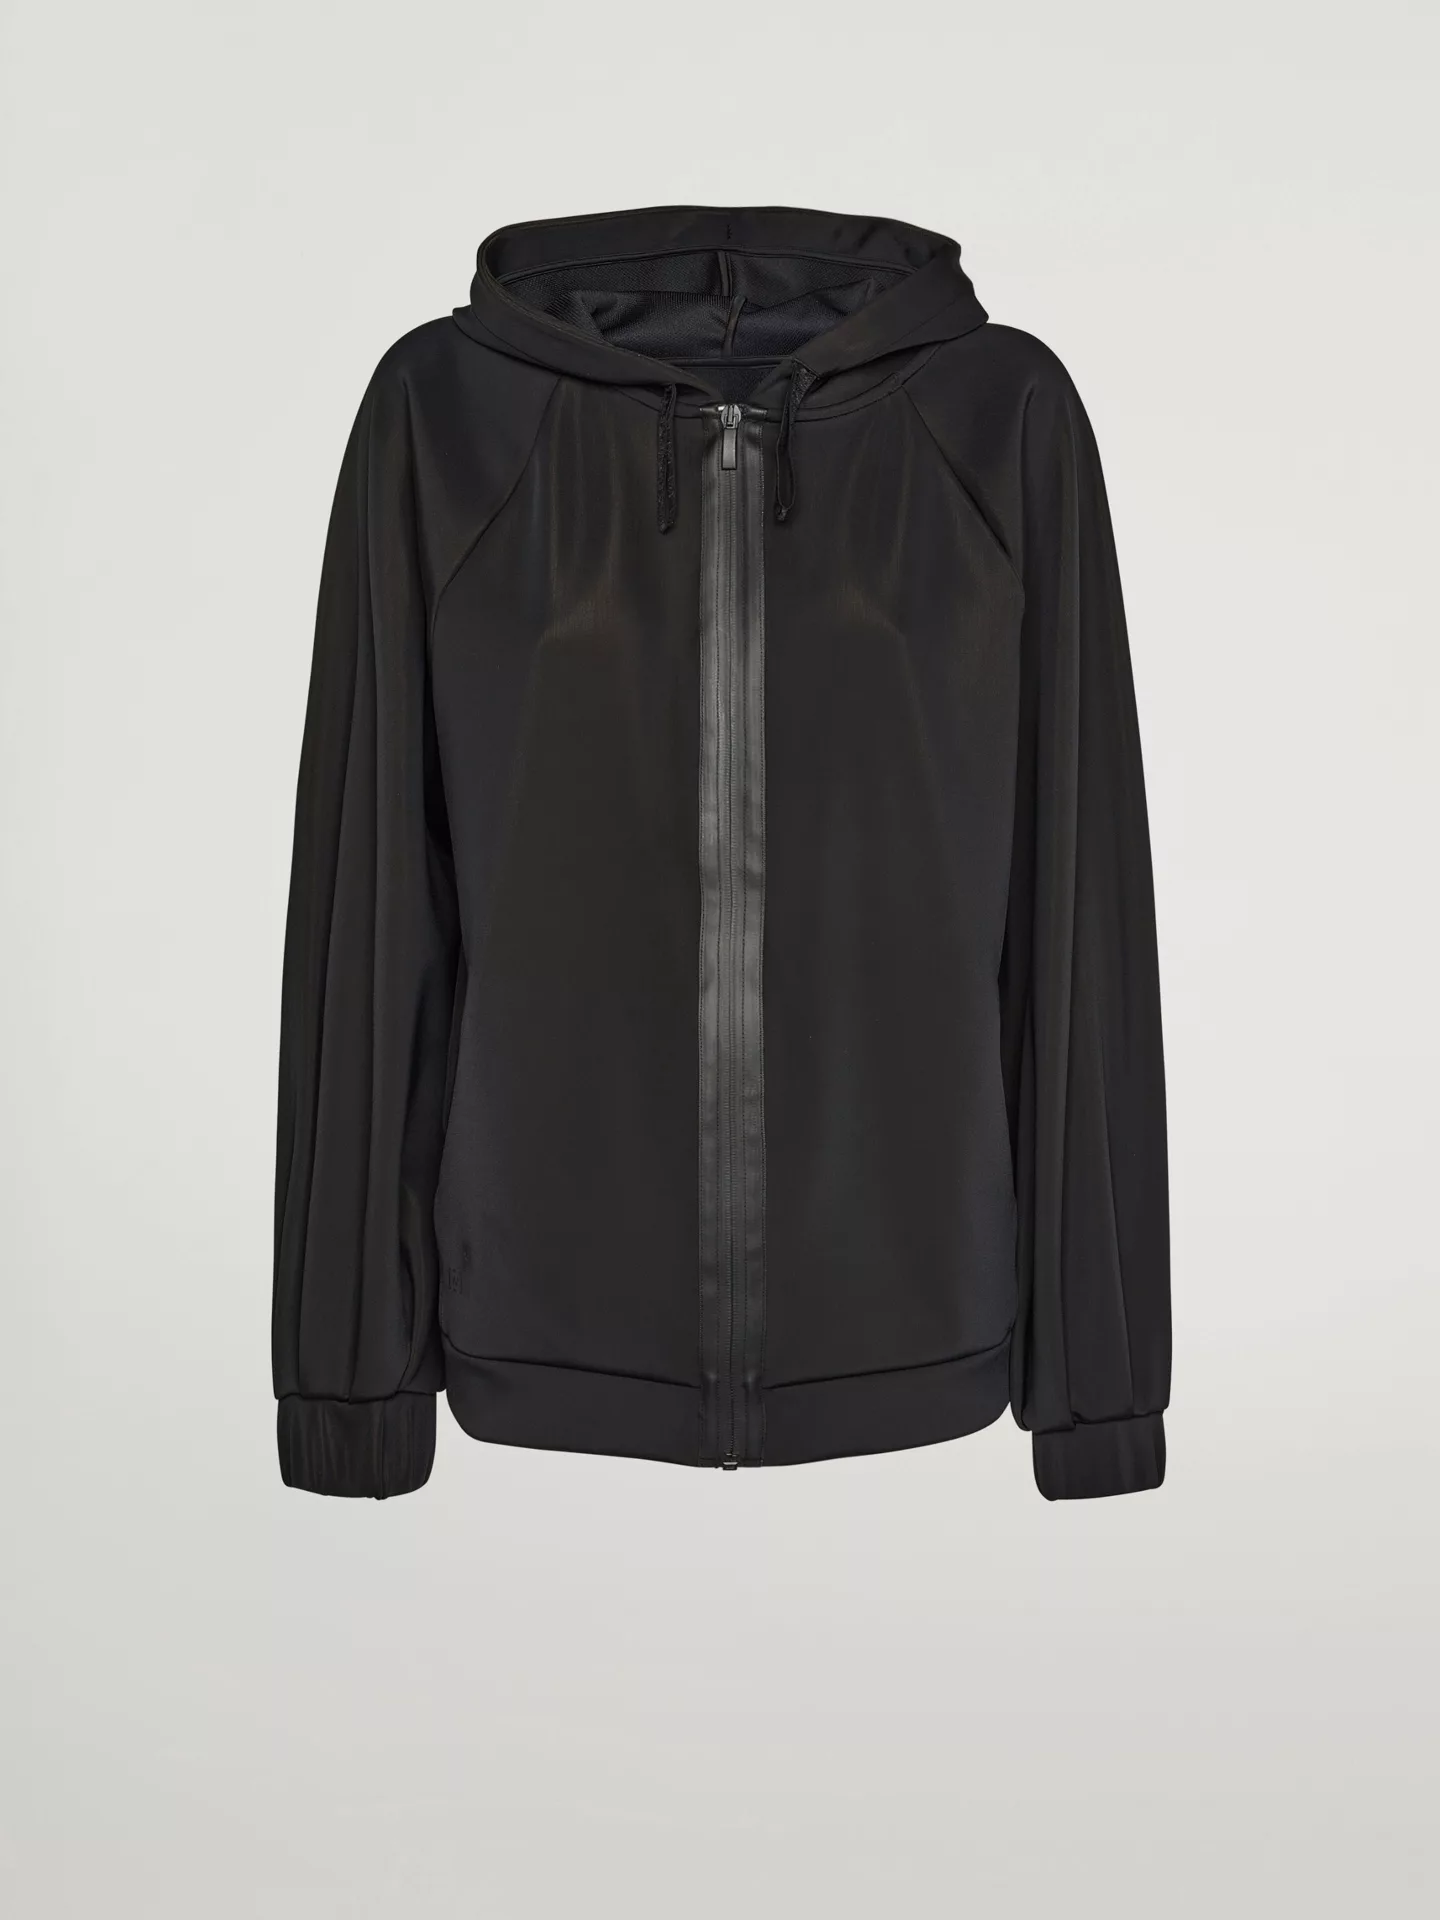 Wolford - Net overlay Jacket, Frau, black, Größe: S günstig online kaufen